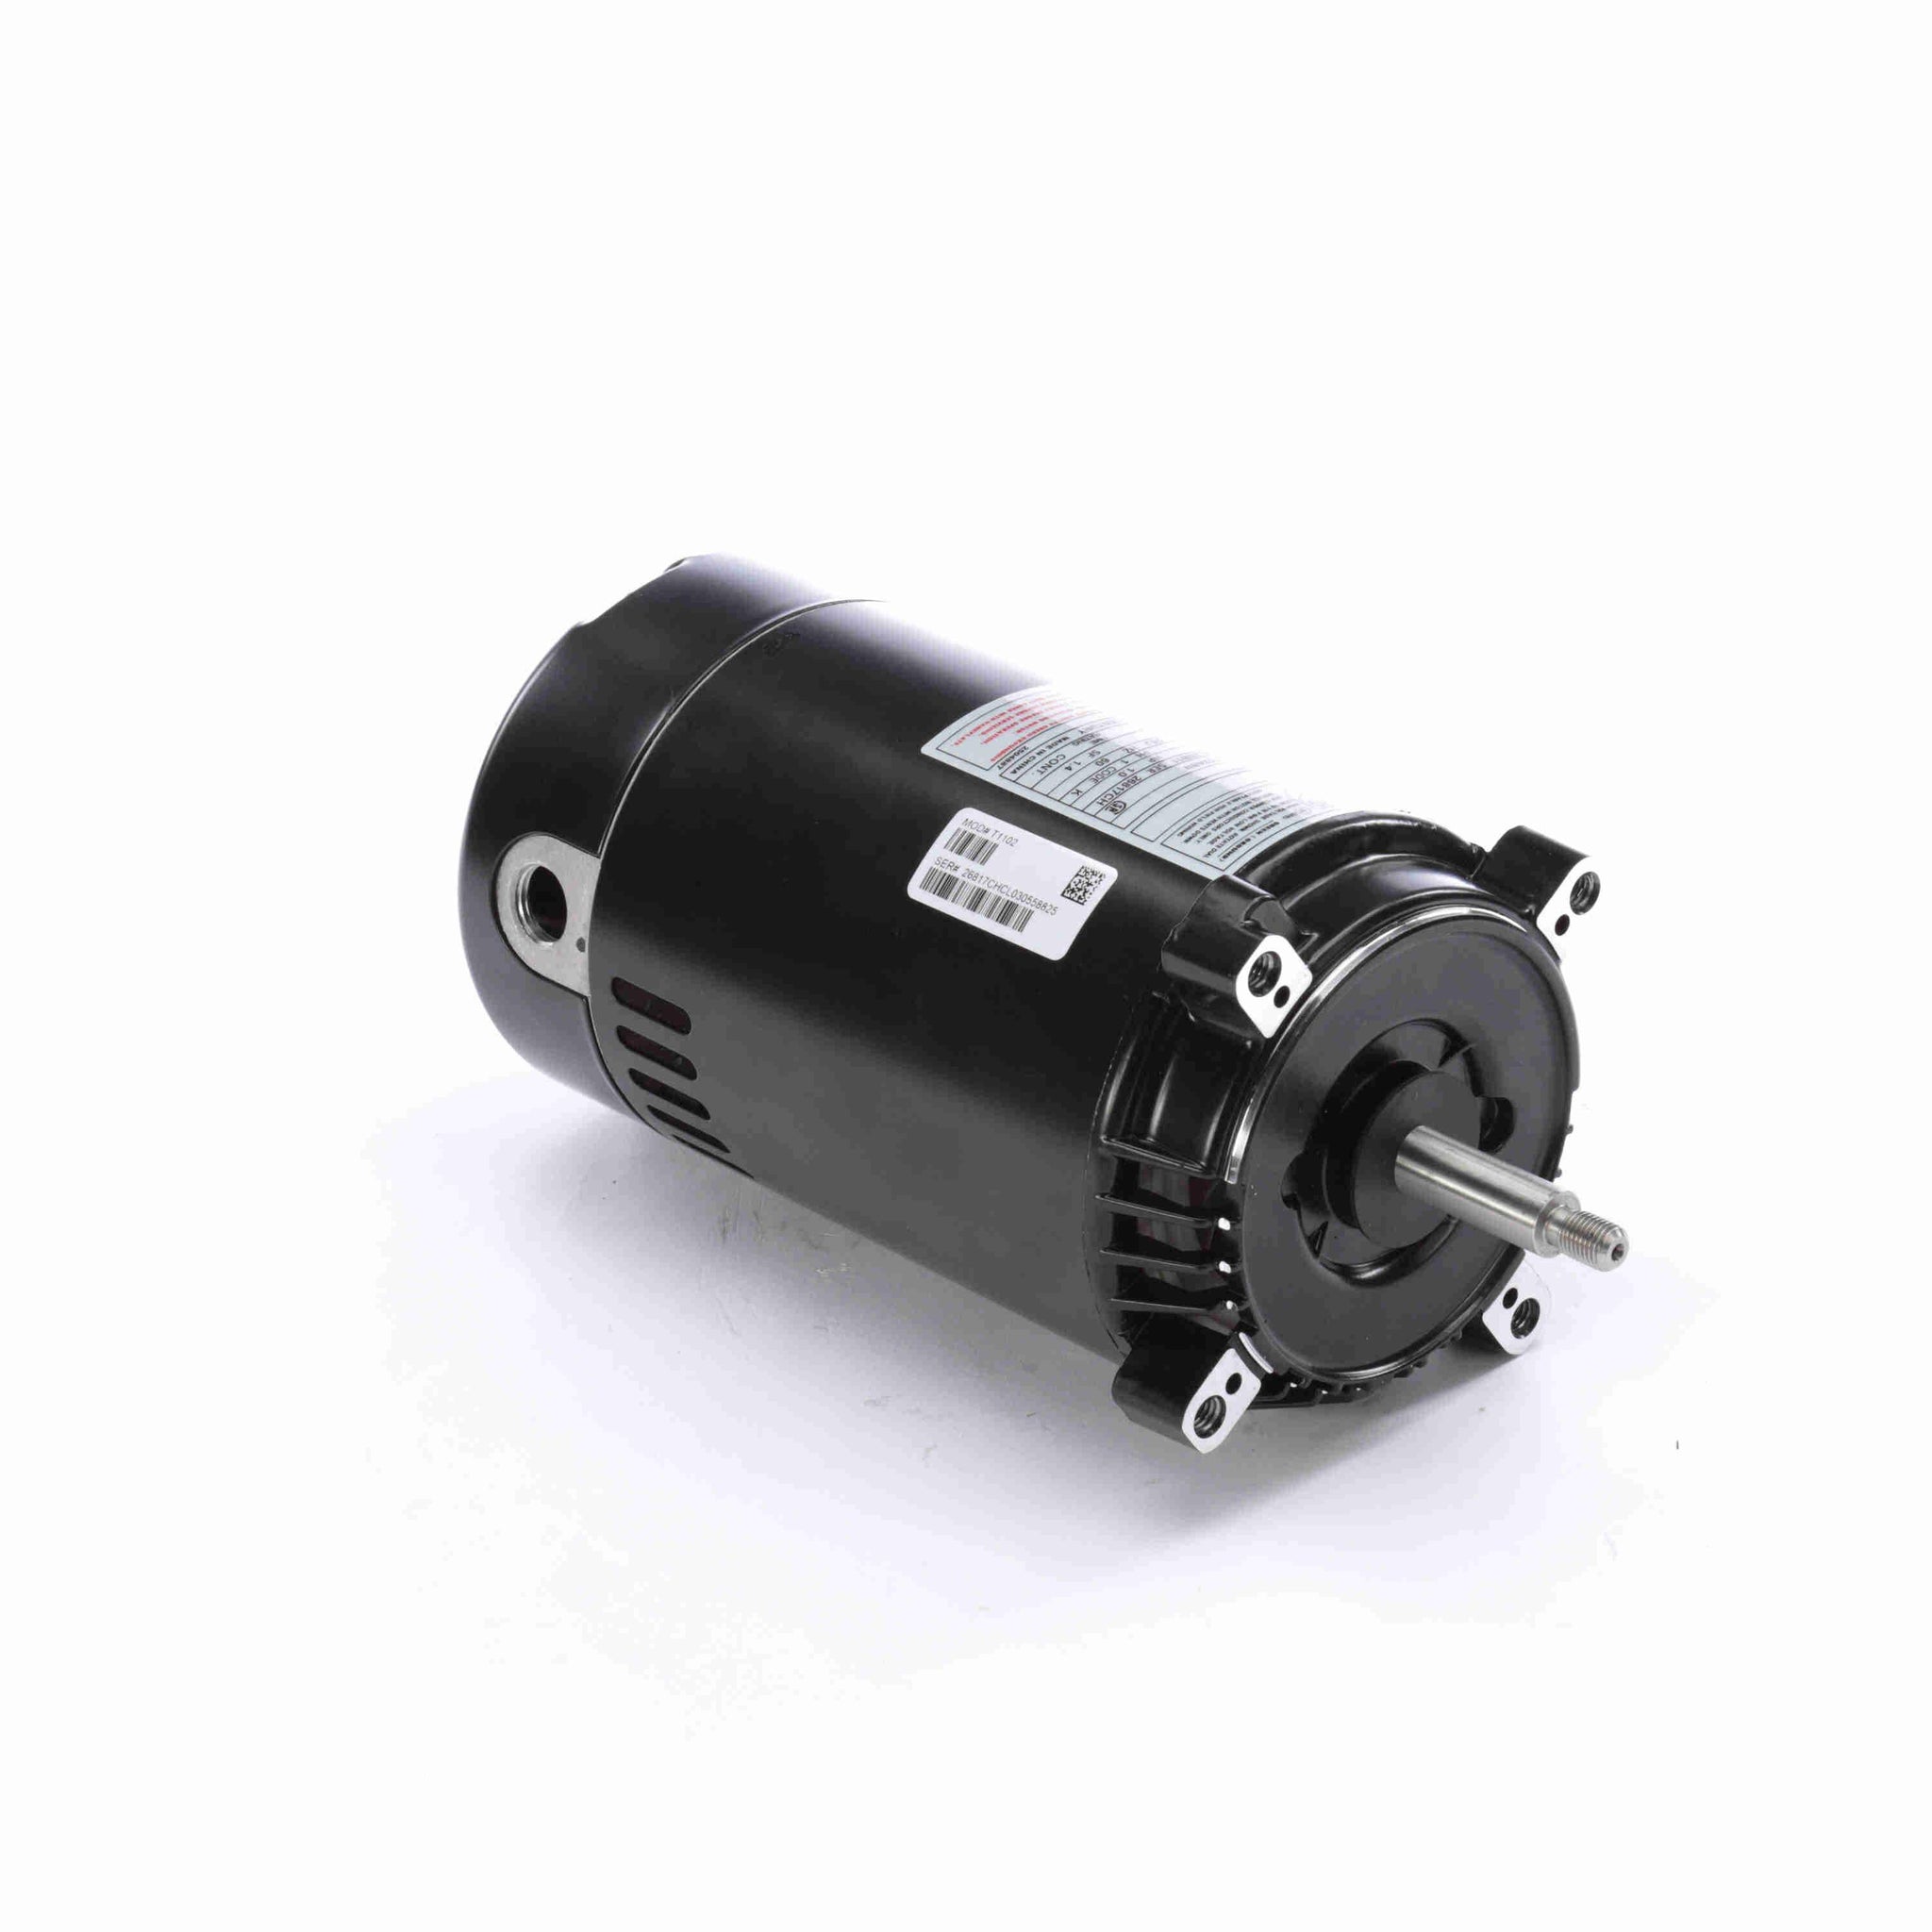 T1102 - 1 HP Jet Pump Motor, 1 phase, 3600 RPM, 230/115 V, 56J Frame, ODP - Hardware & Moreee